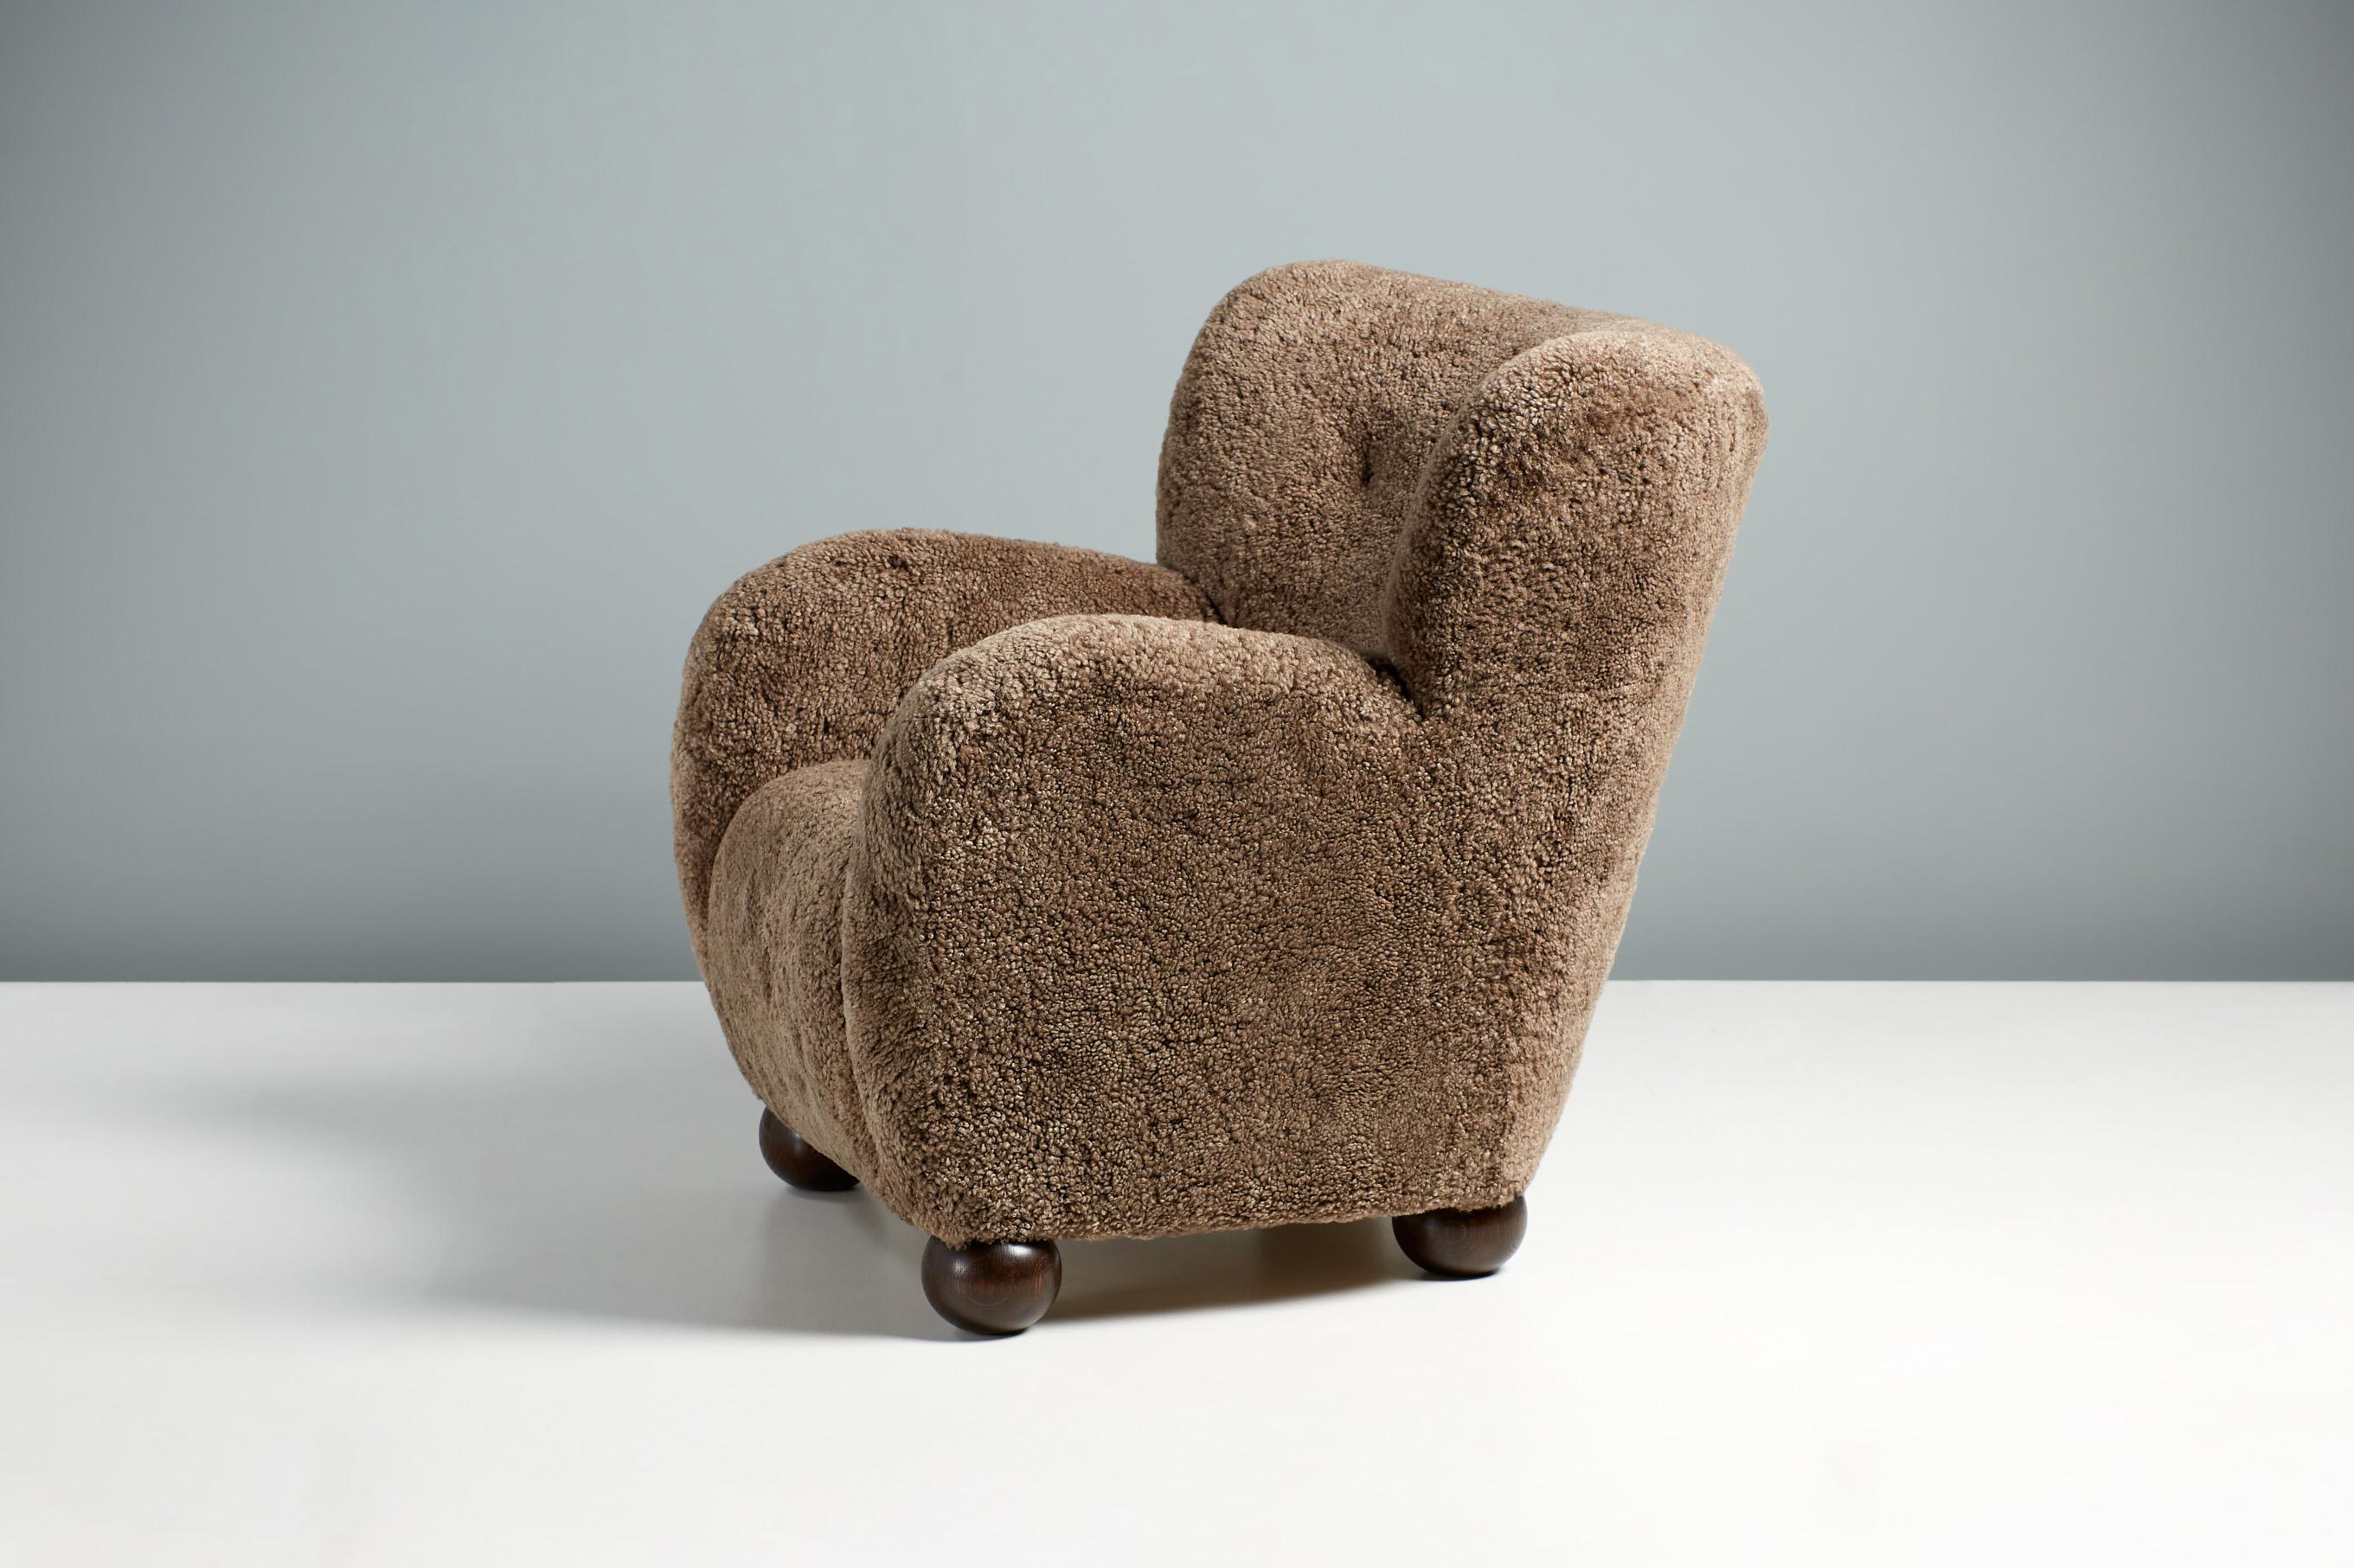 Dagmar Design - Fauteuil Karu.

Le fauteuil Karu est fabriqué à la main sur commande dans nos ateliers au Royaume-Uni, avec un cadre en bois de hêtre massif et une assise entièrement suspendue. Les pieds ronds sont disponibles en chêne huilé, en